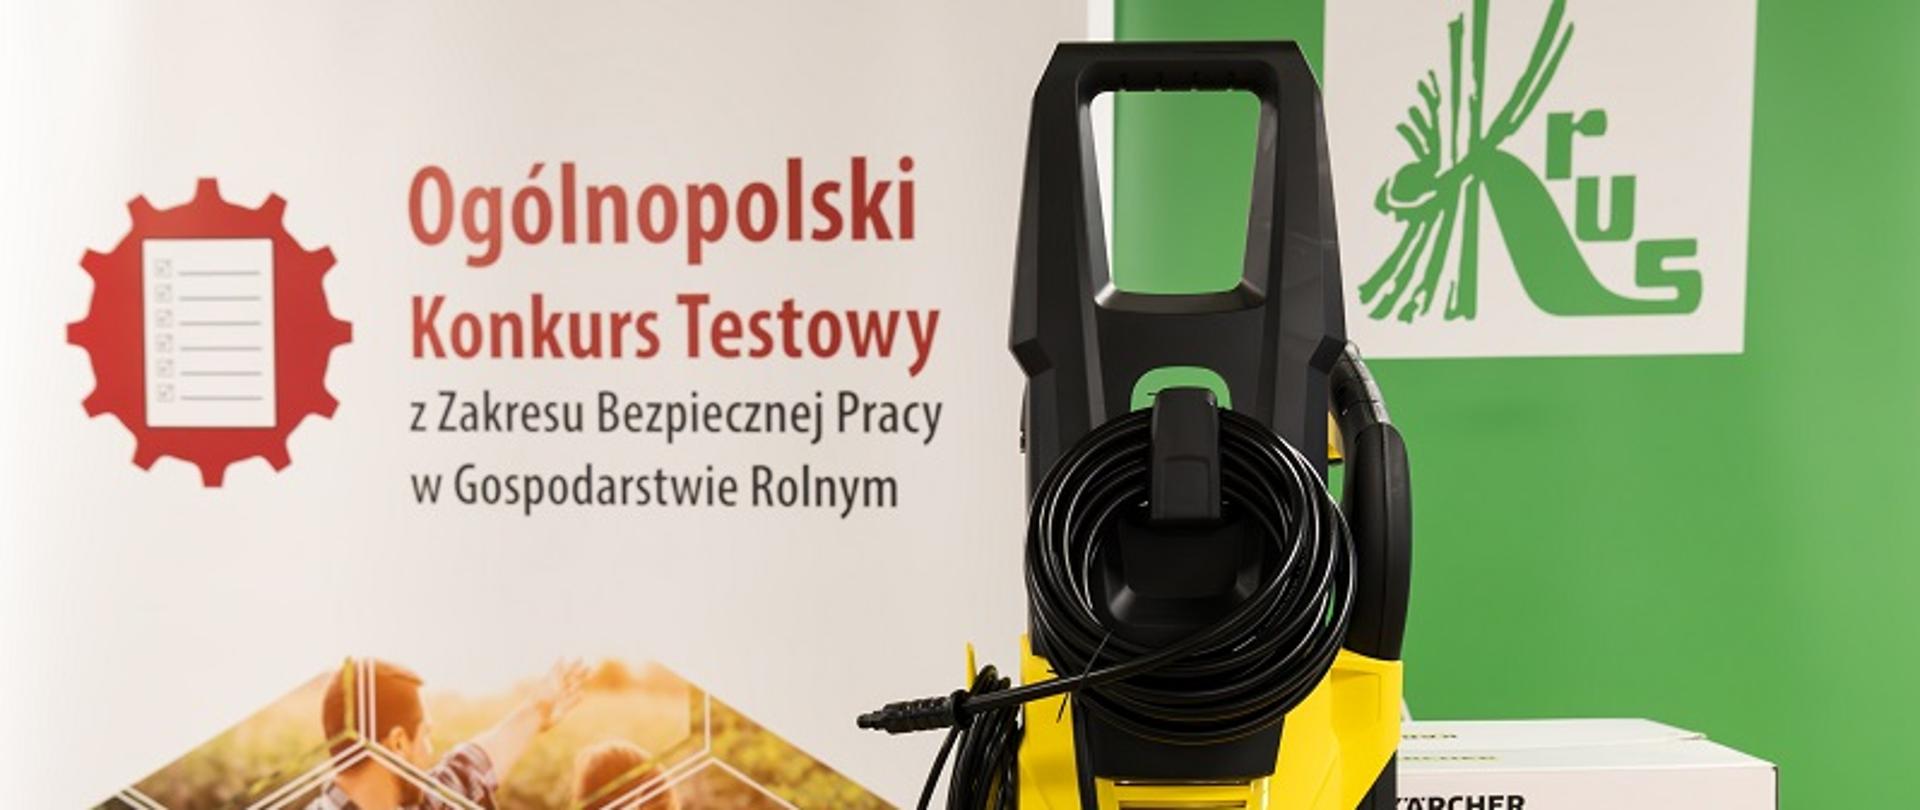 Myjka wysokociśnieniowa na tle plakatu Ogólnopolskiego Konkursu Testowego z Zakresu Bezpieczeństwa w Gospodarstwie Rolnym